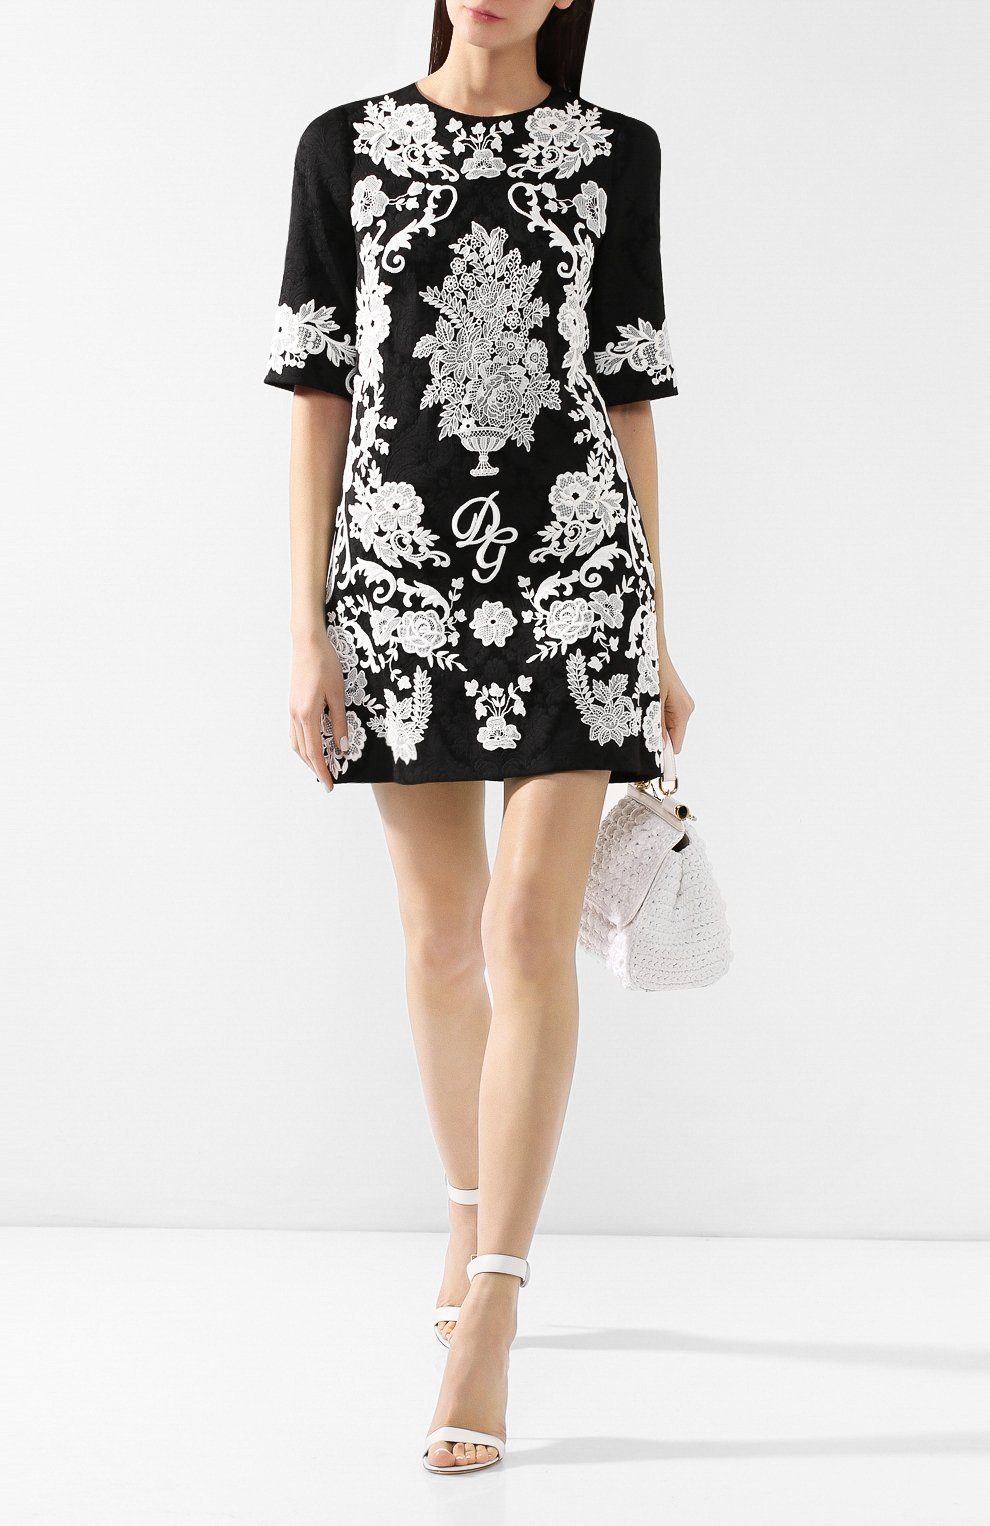 Жаккардовое платье | Dolce & Gabbana | Чёрно-белый - 4